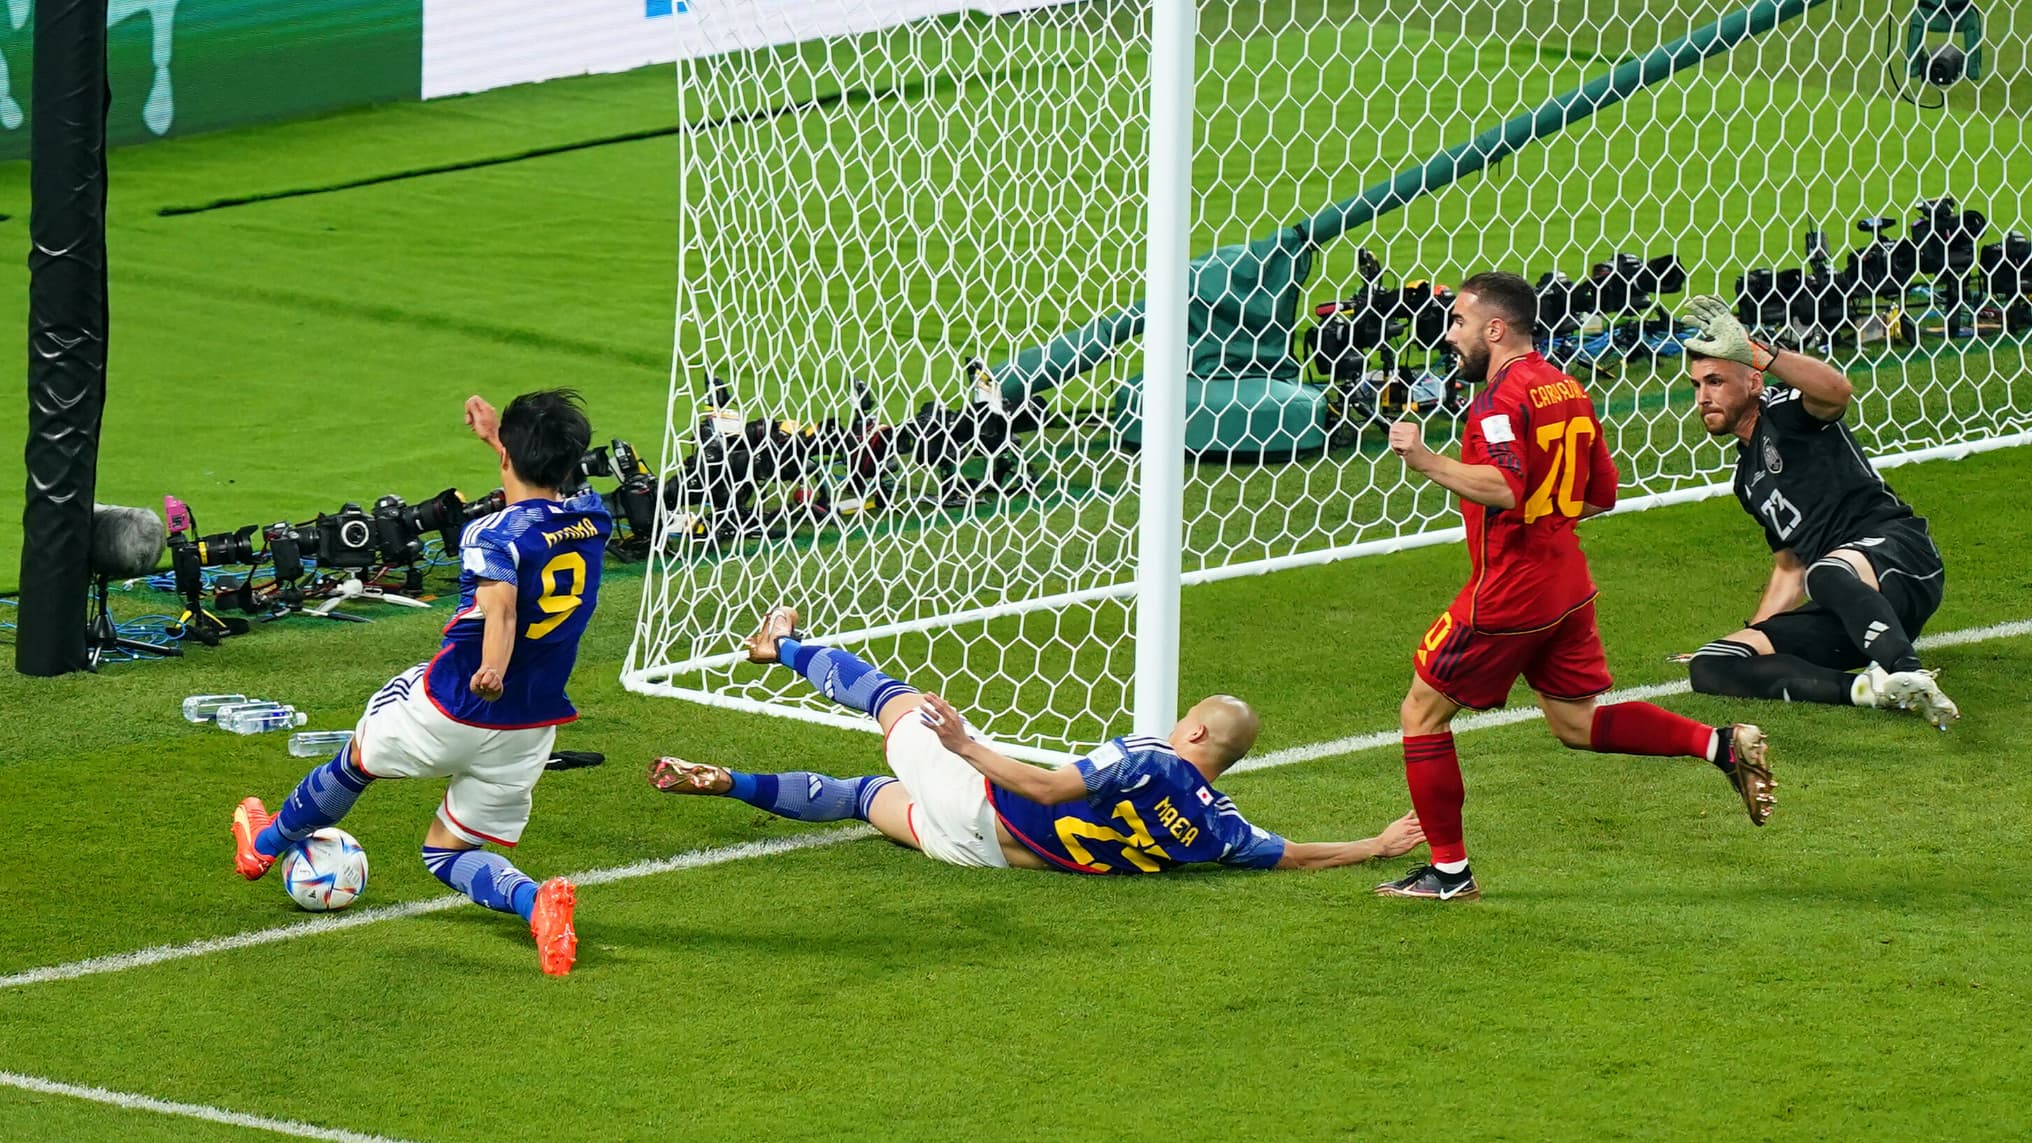 Polémique sur le deuxième but du Japon face à l’Espagne, la FIFA a tranché